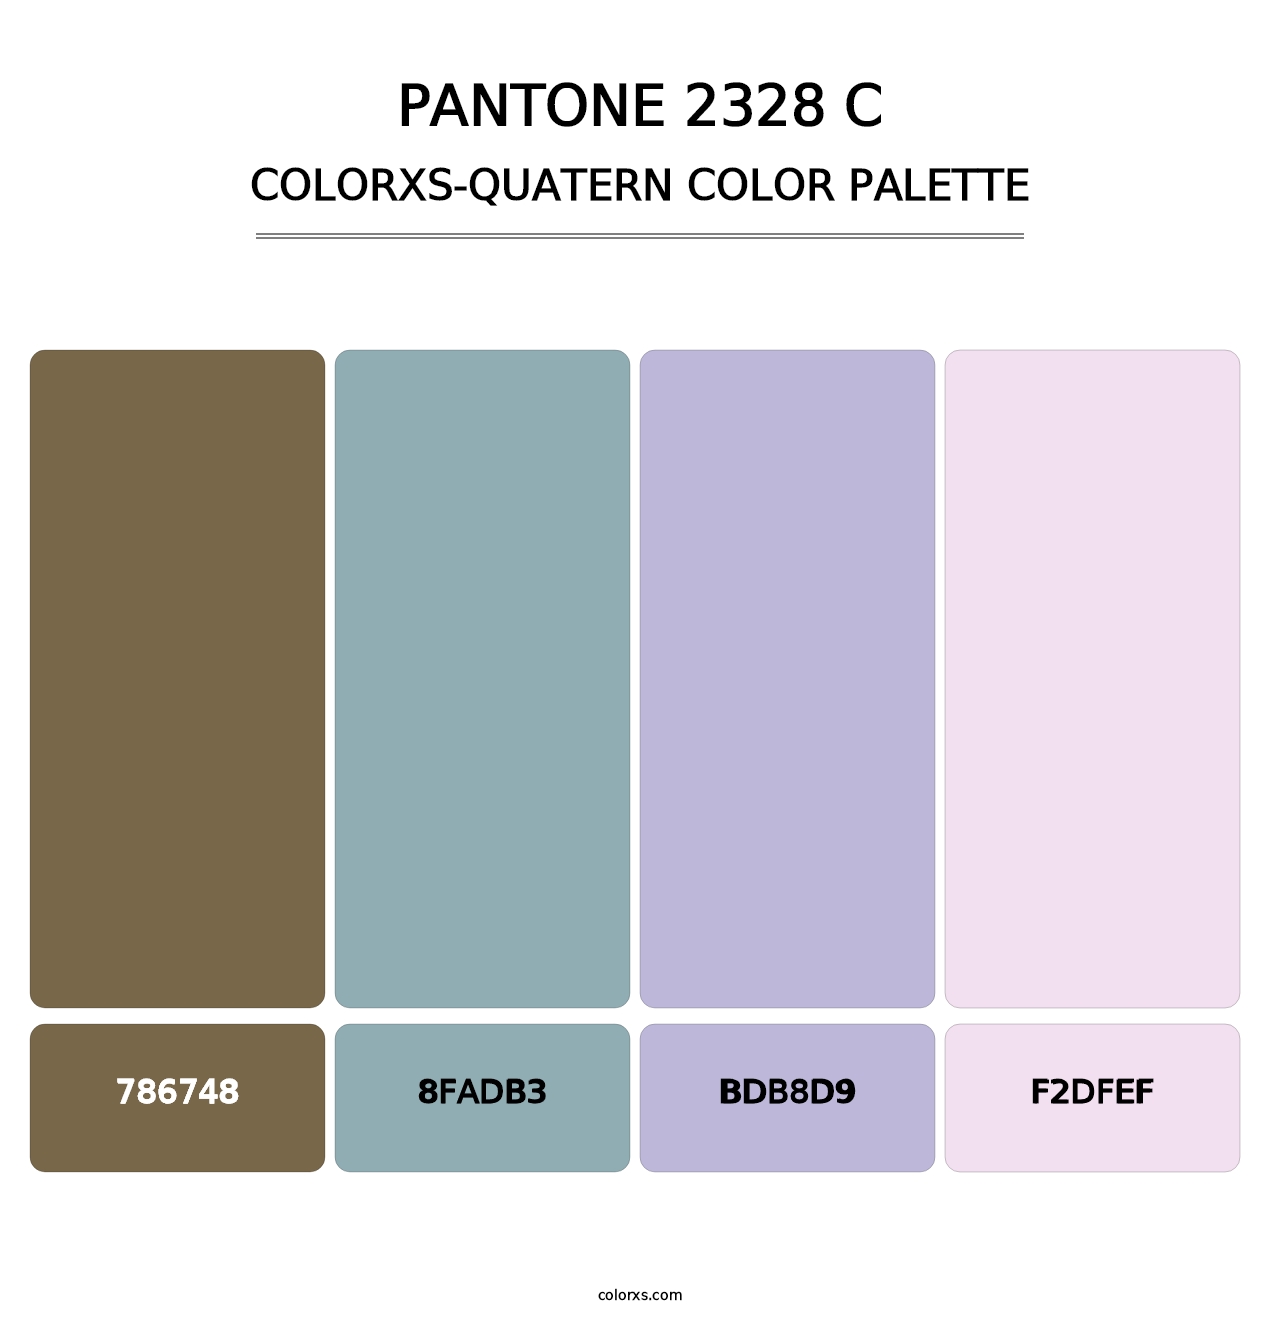 PANTONE 2328 C - Colorxs Quatern Palette